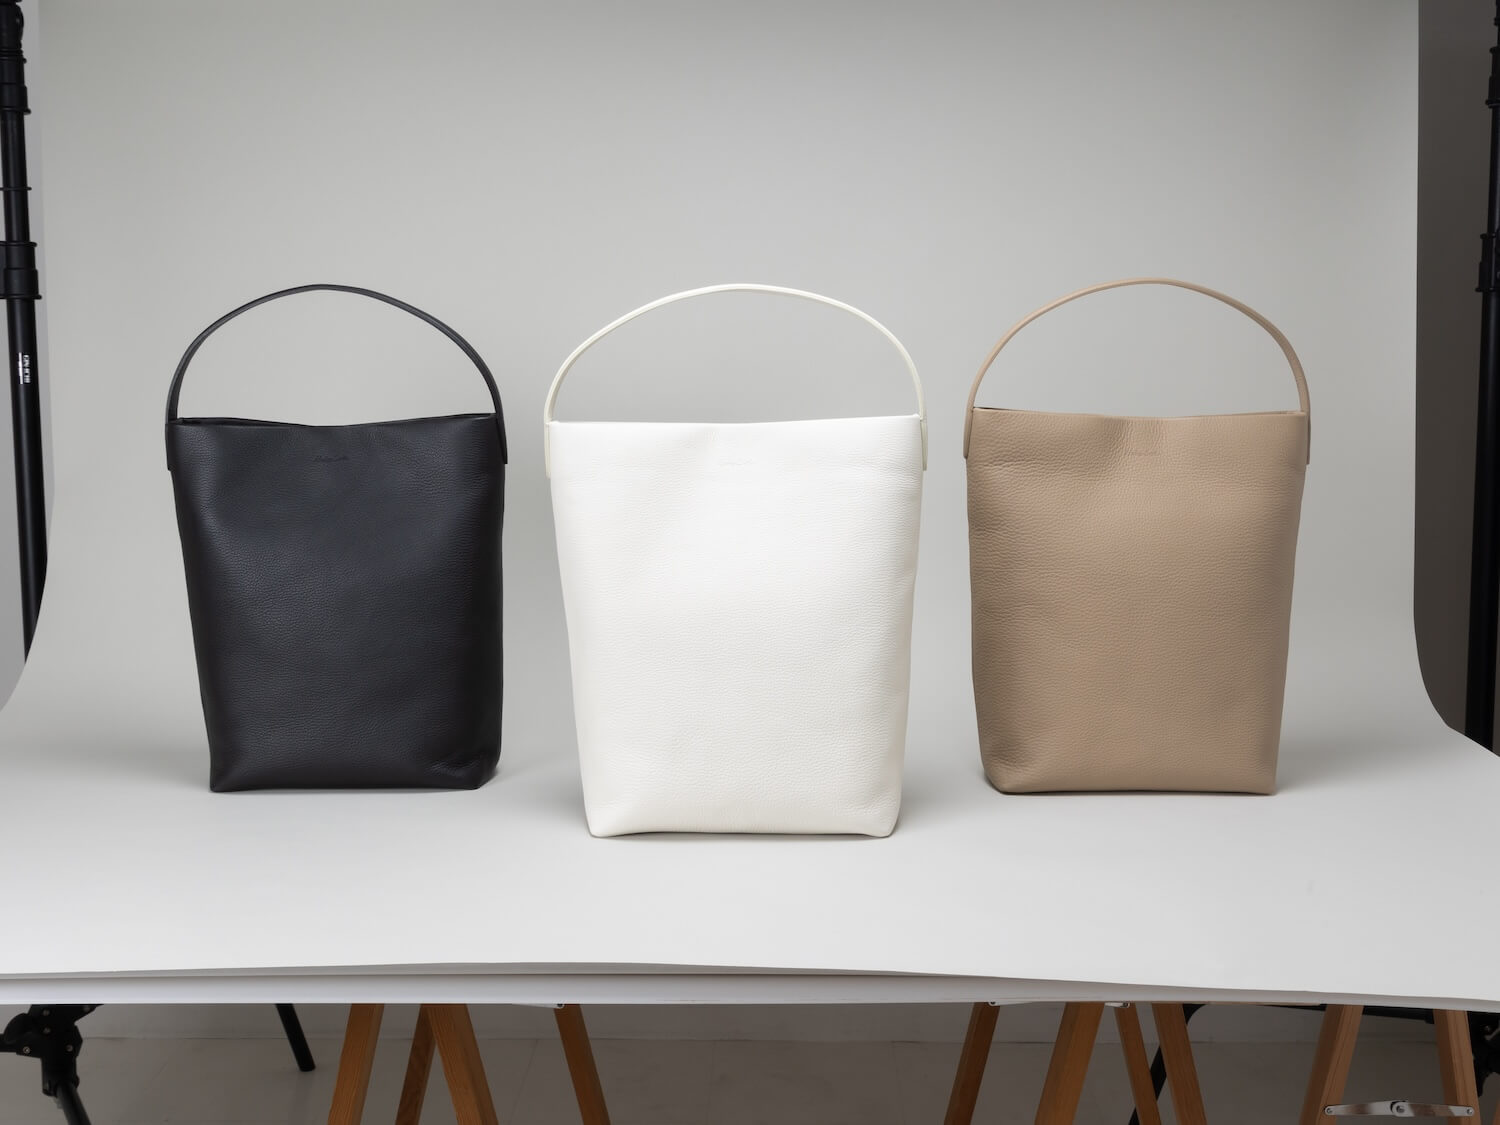 The Soft Bucket 日本でつくる、本革なのに軽く毎日使いたくなるバッグ